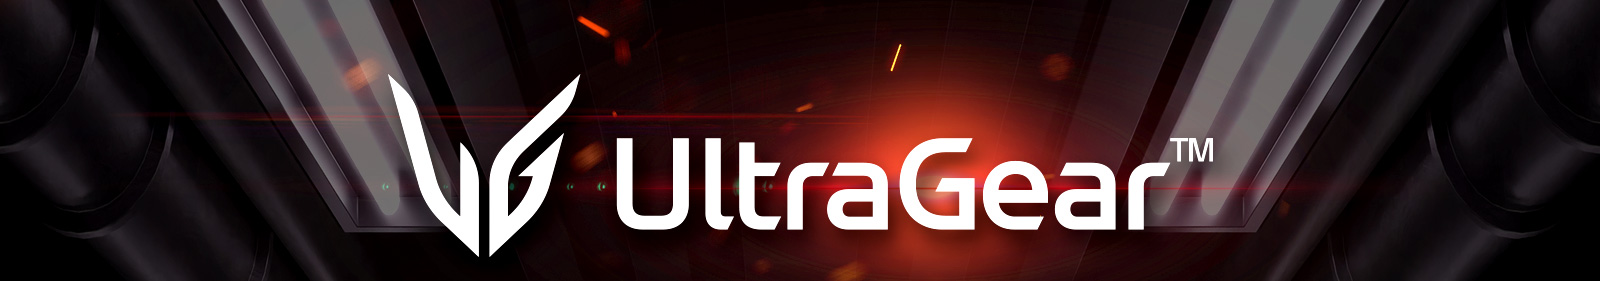 UltraGear™ Oyun Monitörü